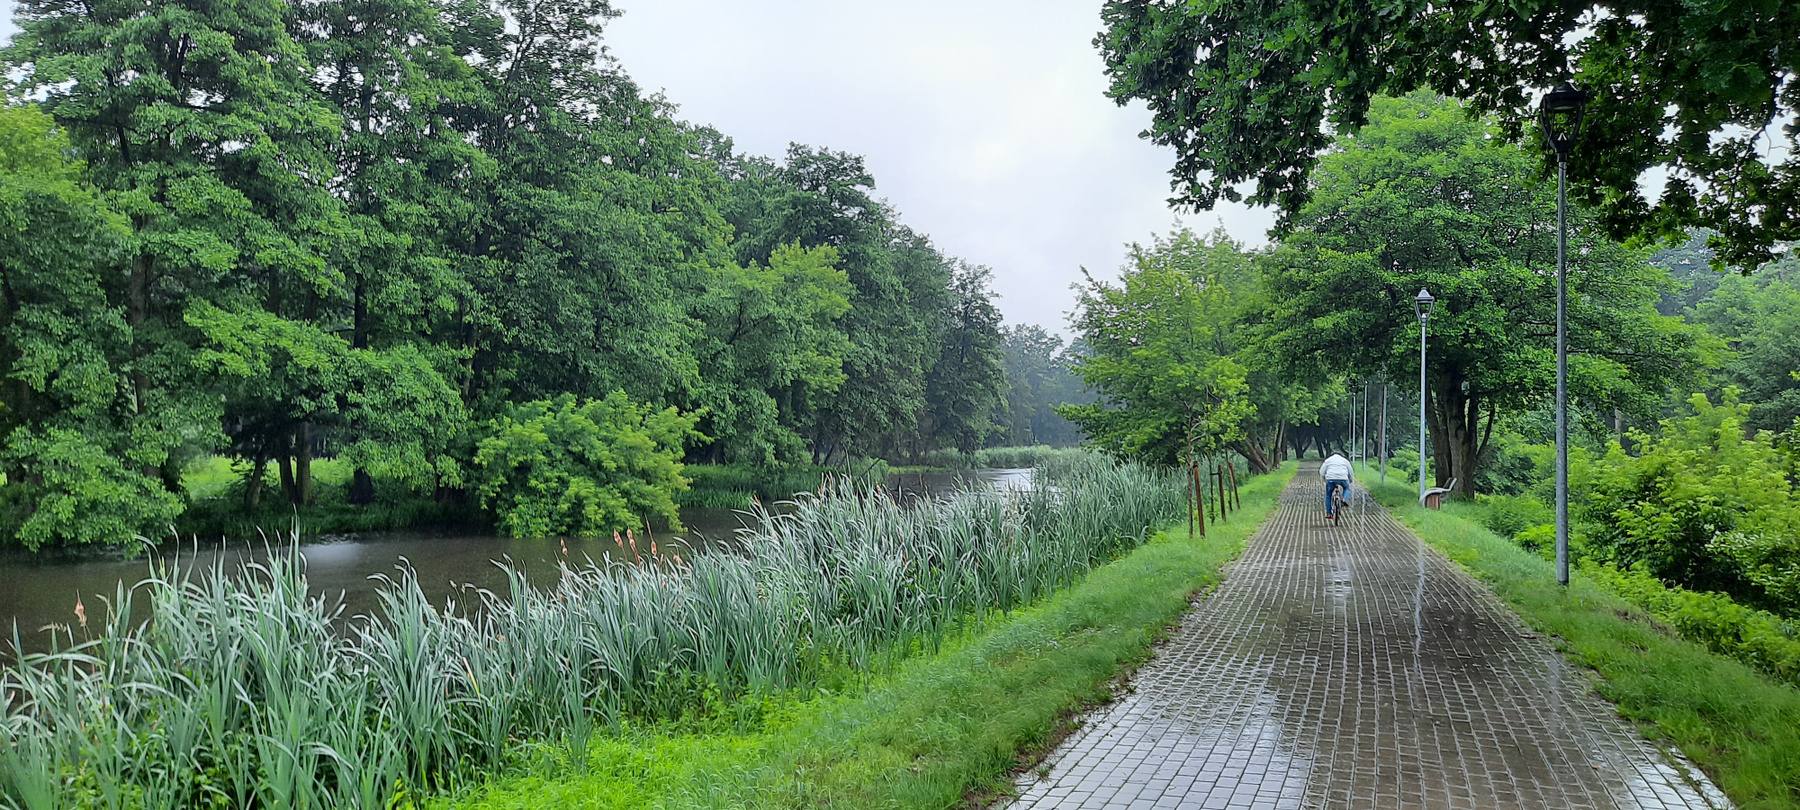 Река Езерка во время дождя река Польша